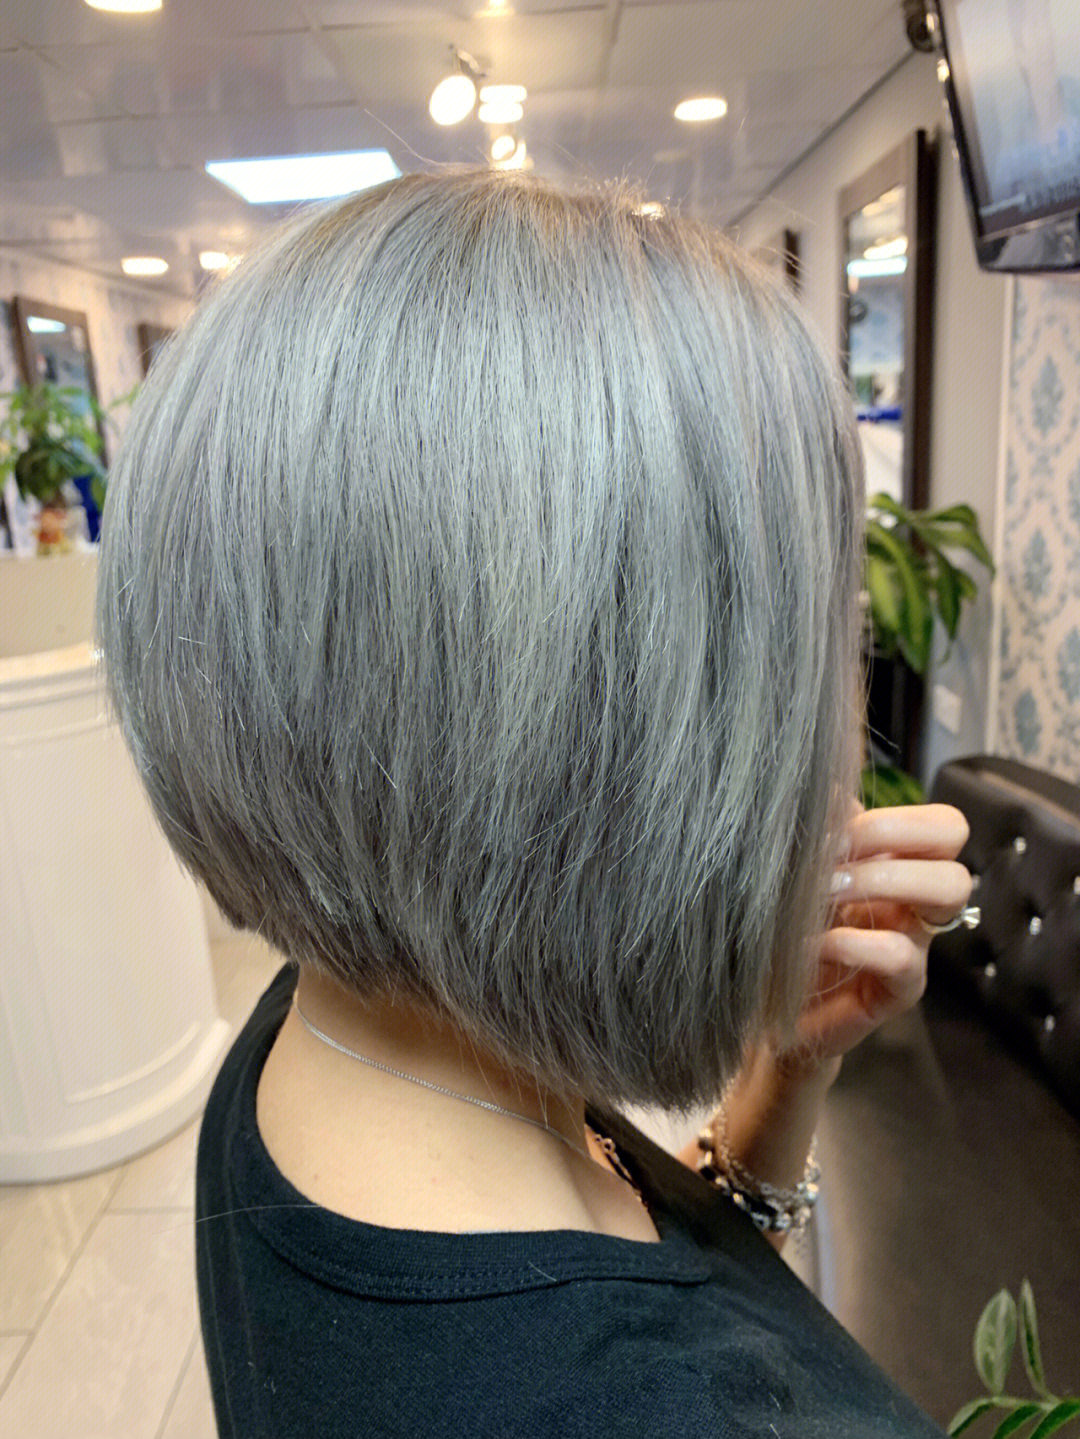 越南客人在其他店做了个灰色,头发烂掉,上色不均匀